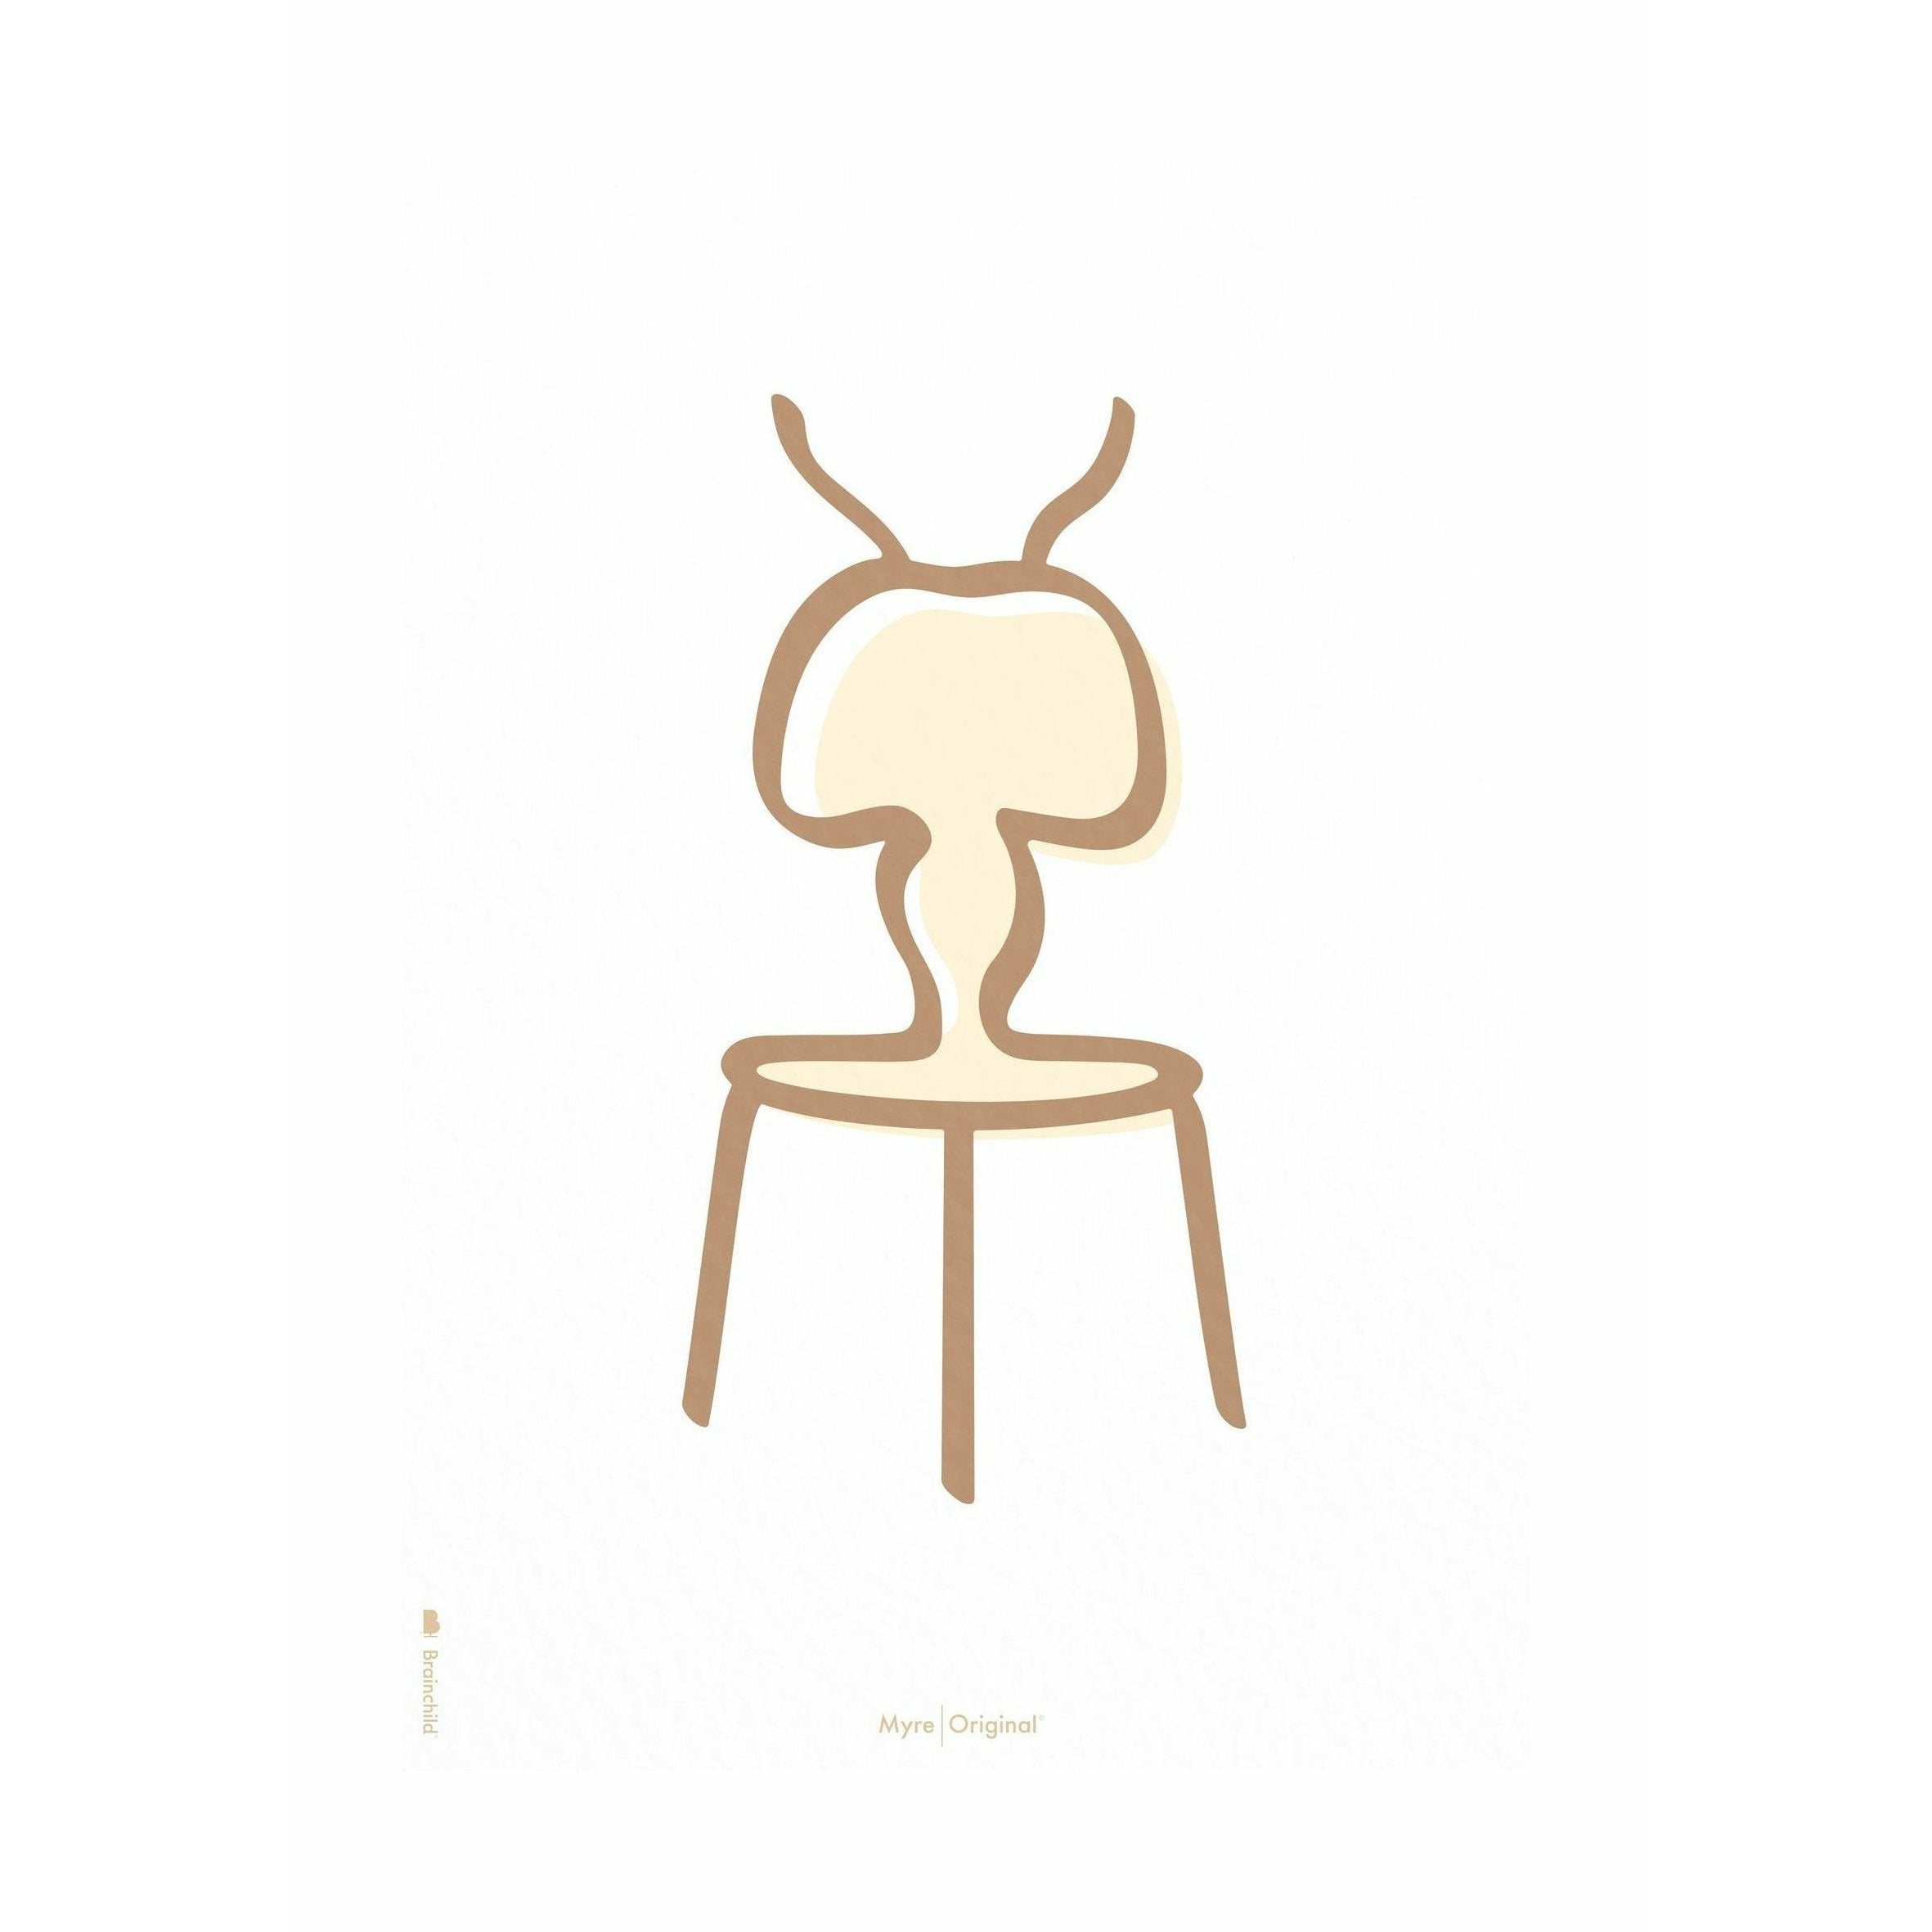 Poster della linea di formiche di fantasia senza cornice A5, sfondo bianco